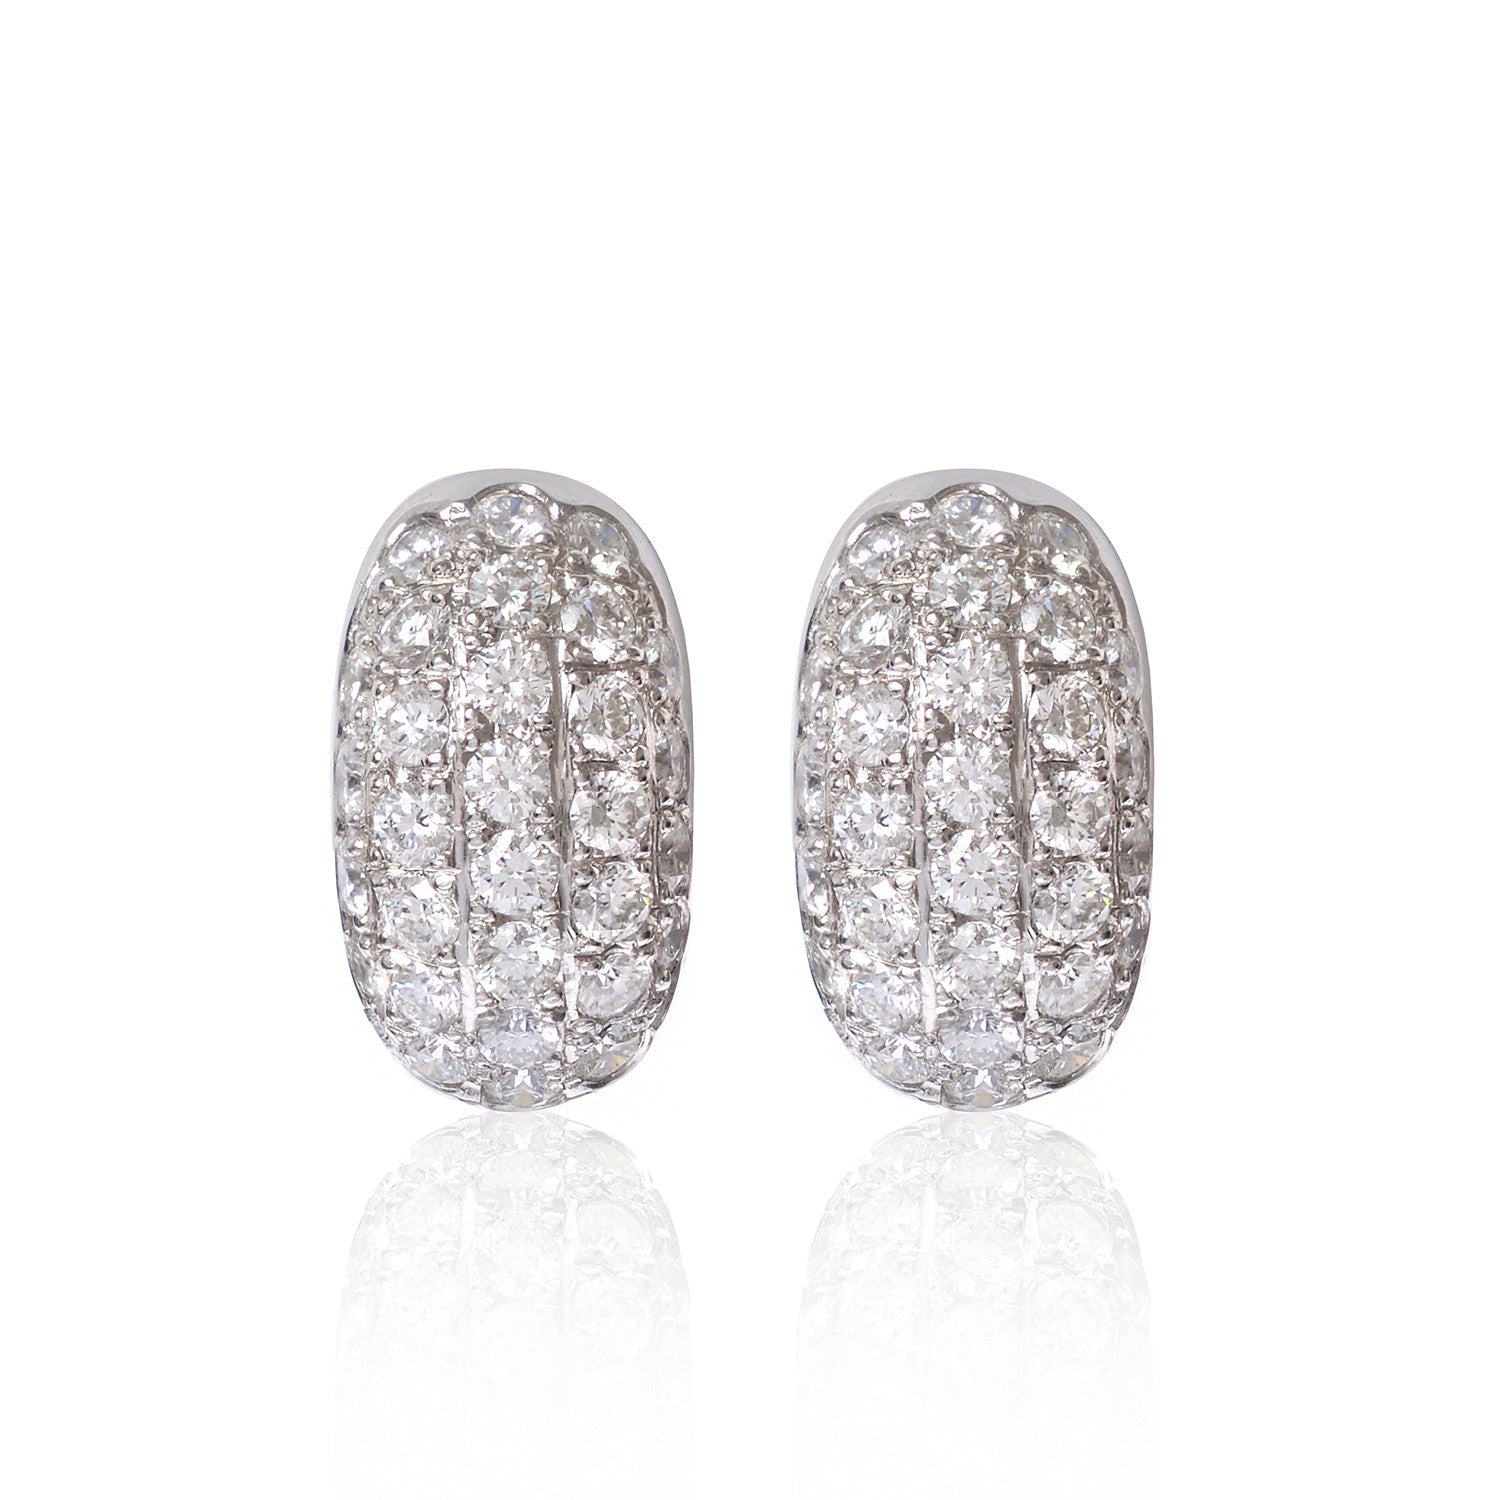 Pavé diamond encrusted earrings by McFarlane Fine Jewellery